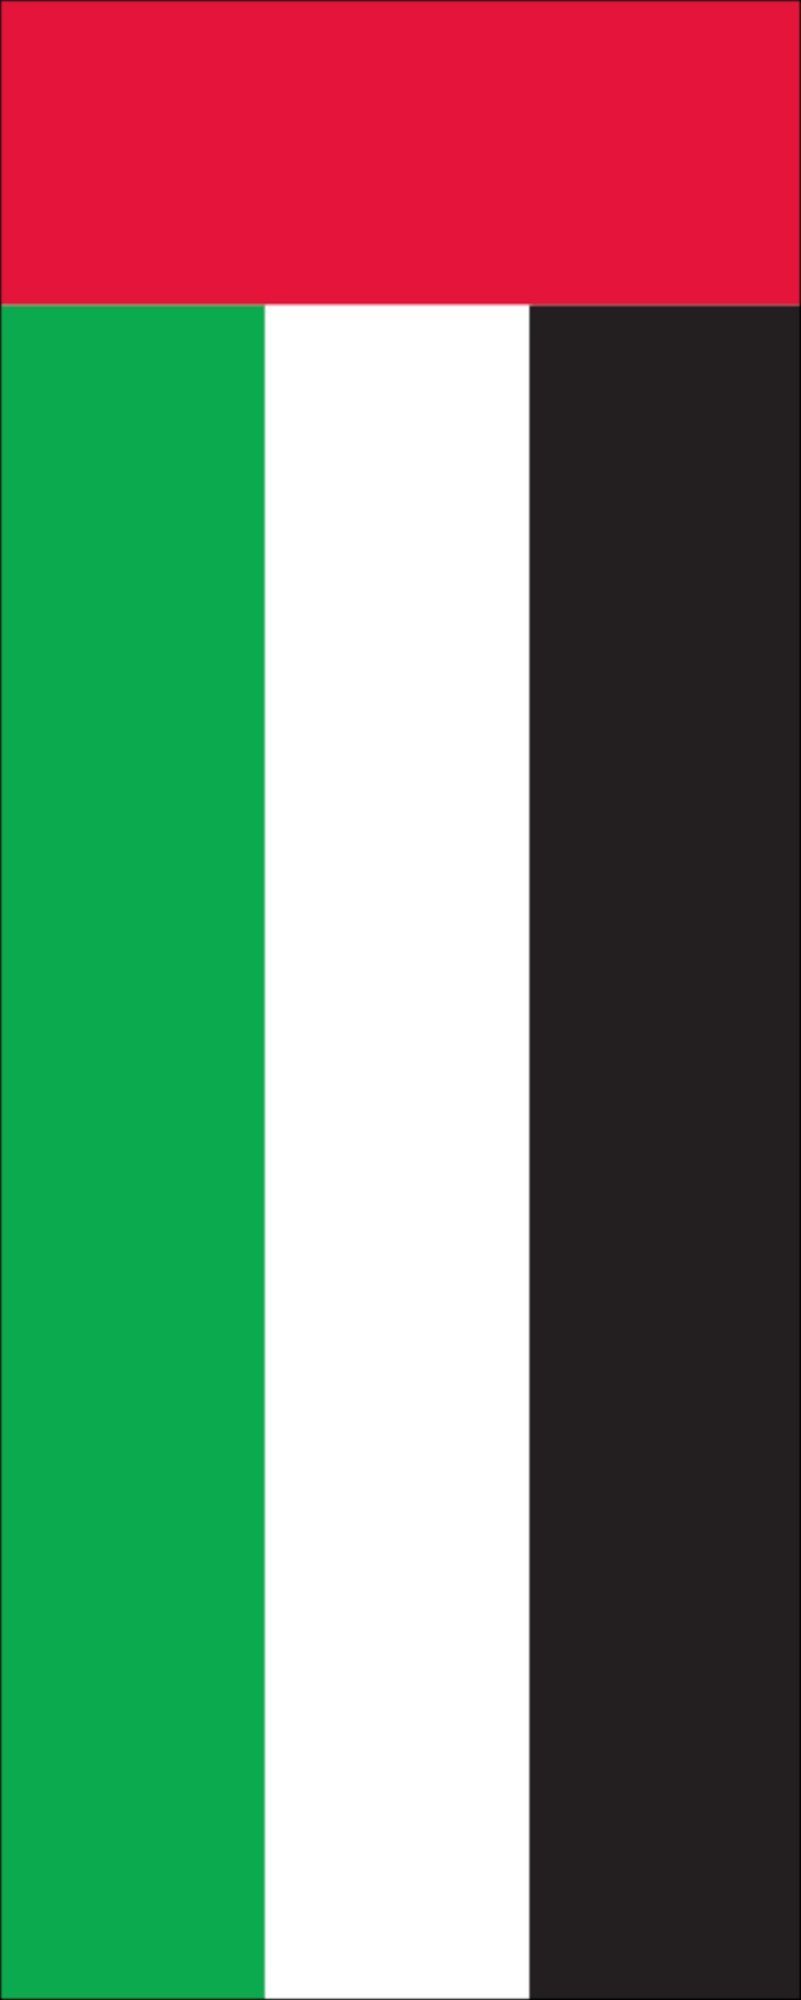 Arabische Hochformat g/m² 160 flaggenmeer Vereinigte Emirate Flagge